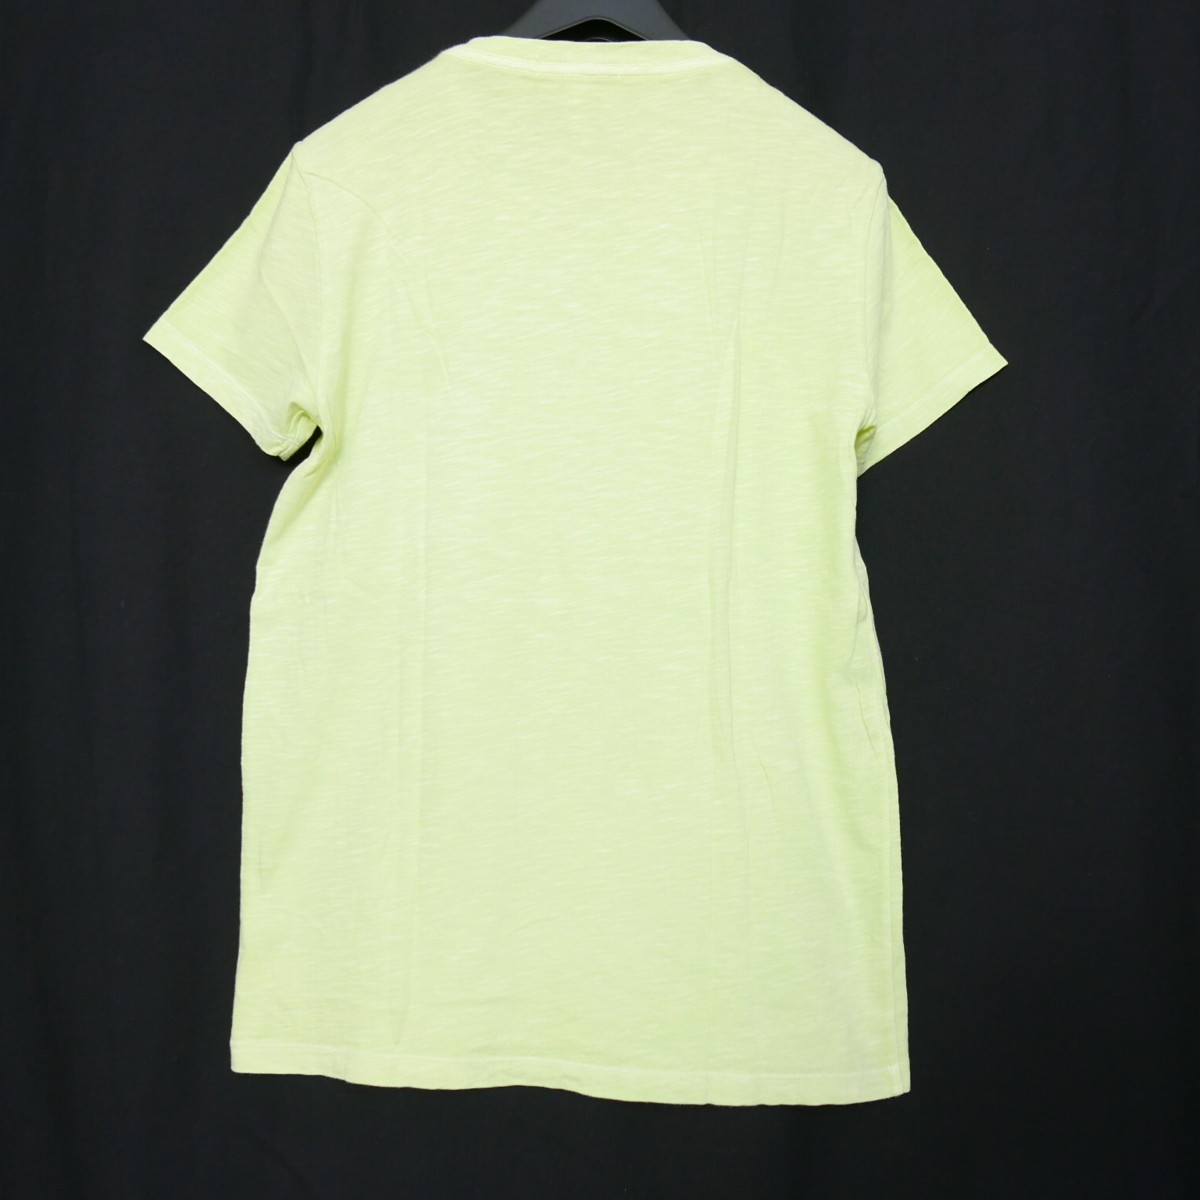 BEAMS California Beams California cotton short sleeves plain pocket TEE T-shirt cut and sewn MADE IN USA LIGHT GREEN 1